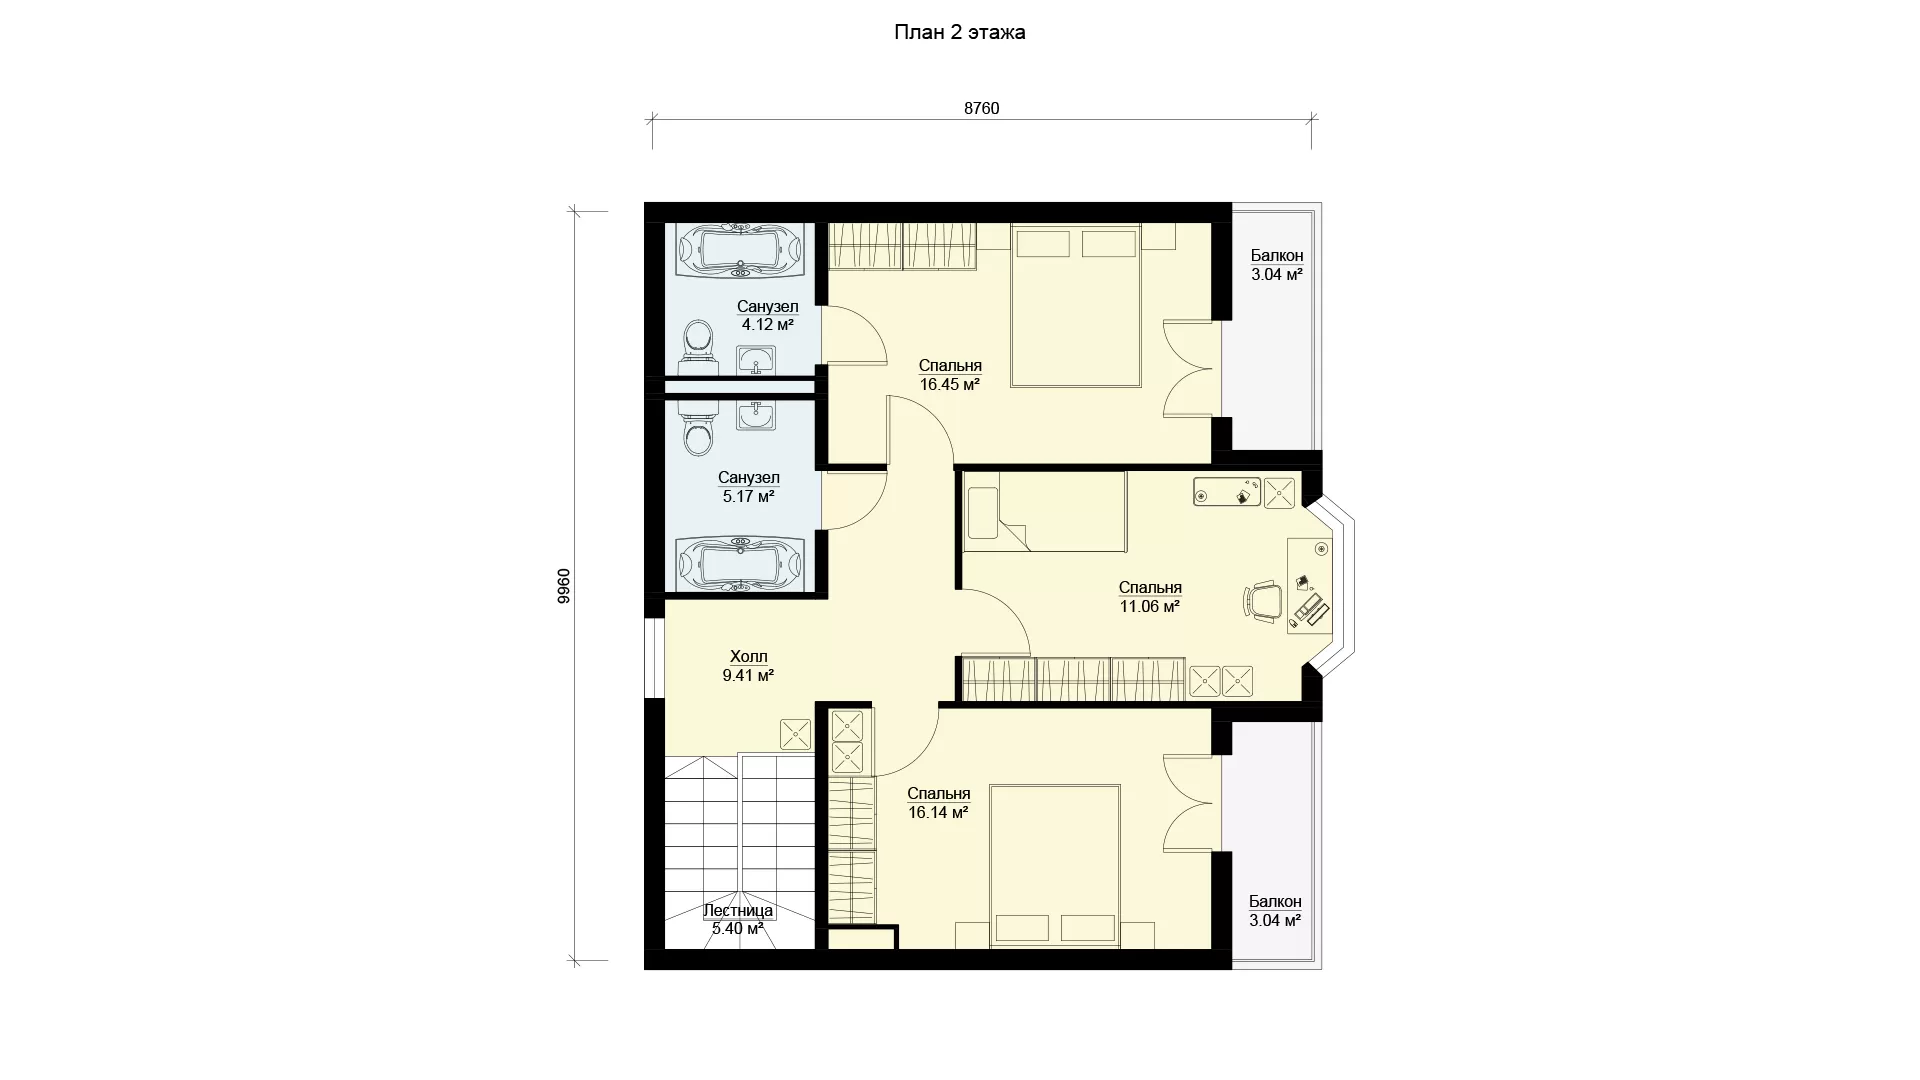 Планировка второго этажа дома с цокольным этажом, проект МС-164/К